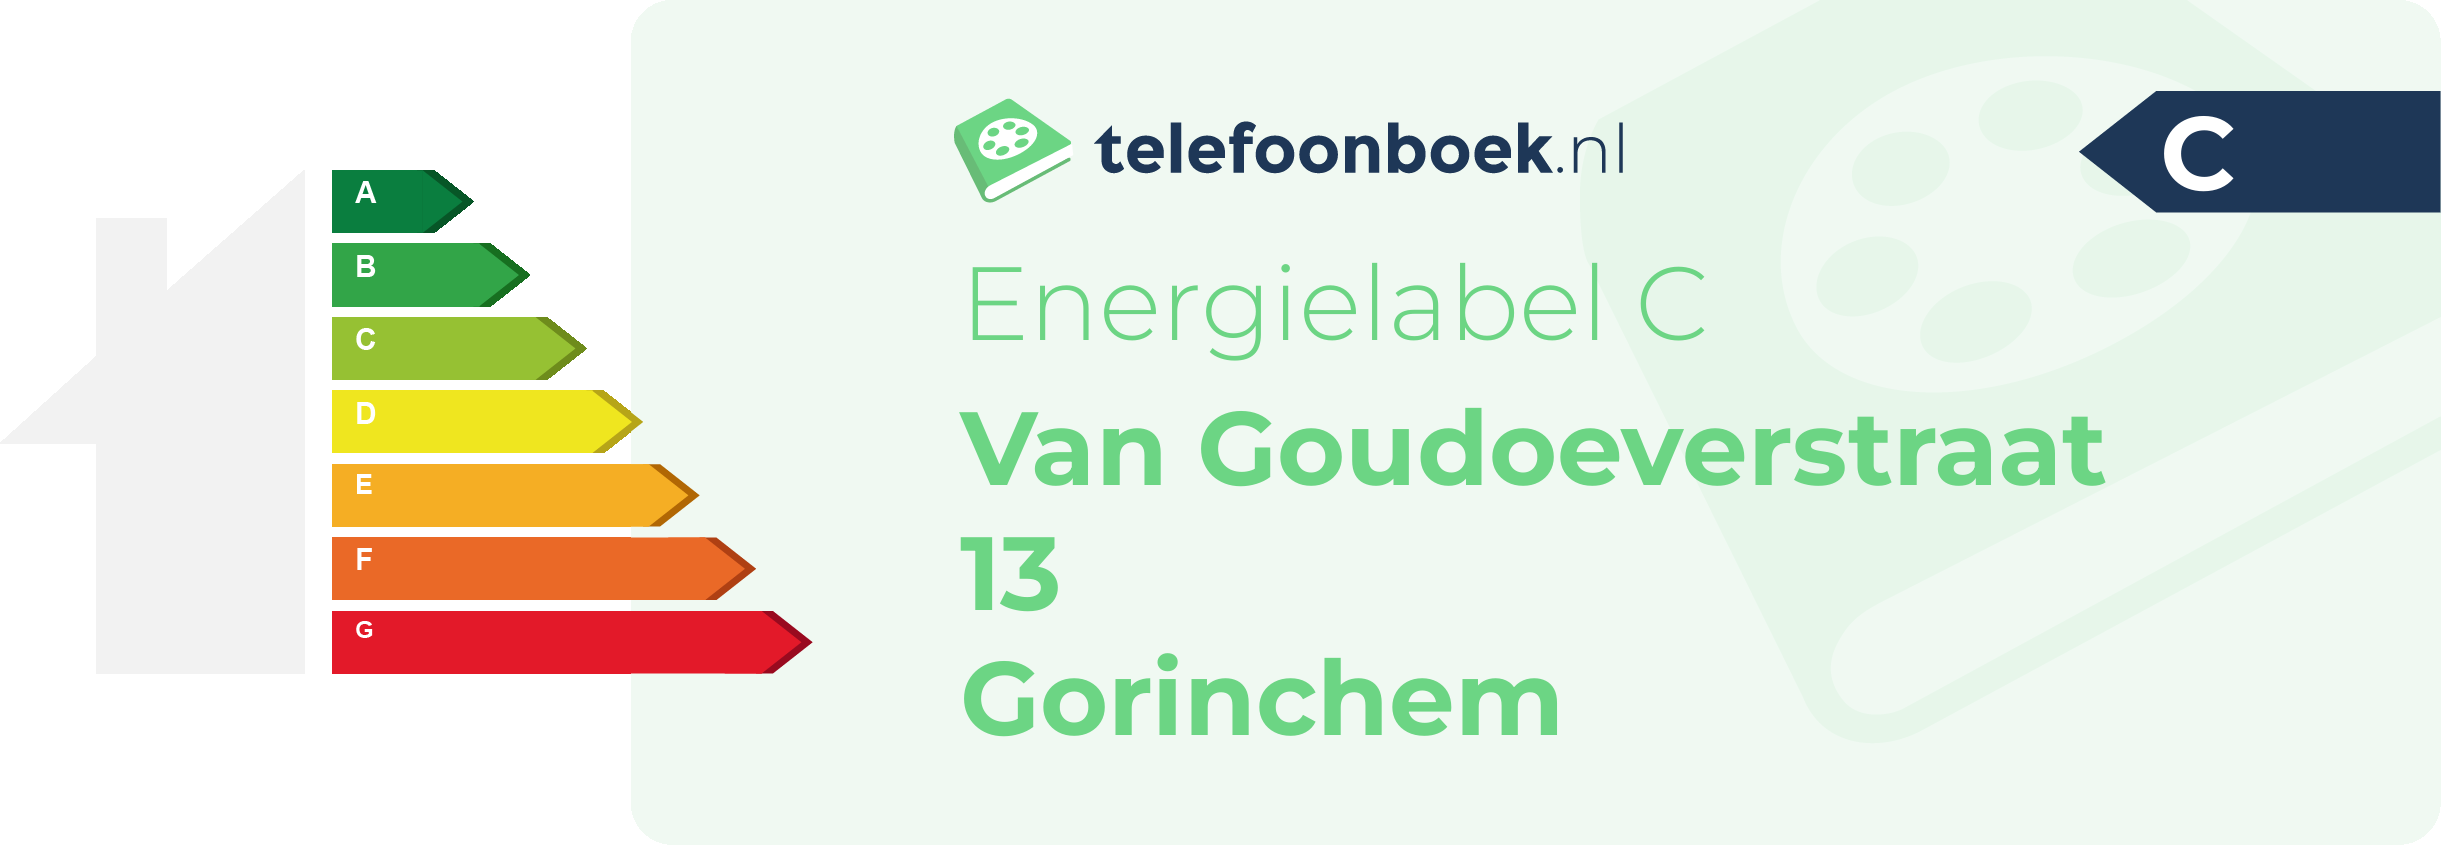 Energielabel Van Goudoeverstraat 13 Gorinchem